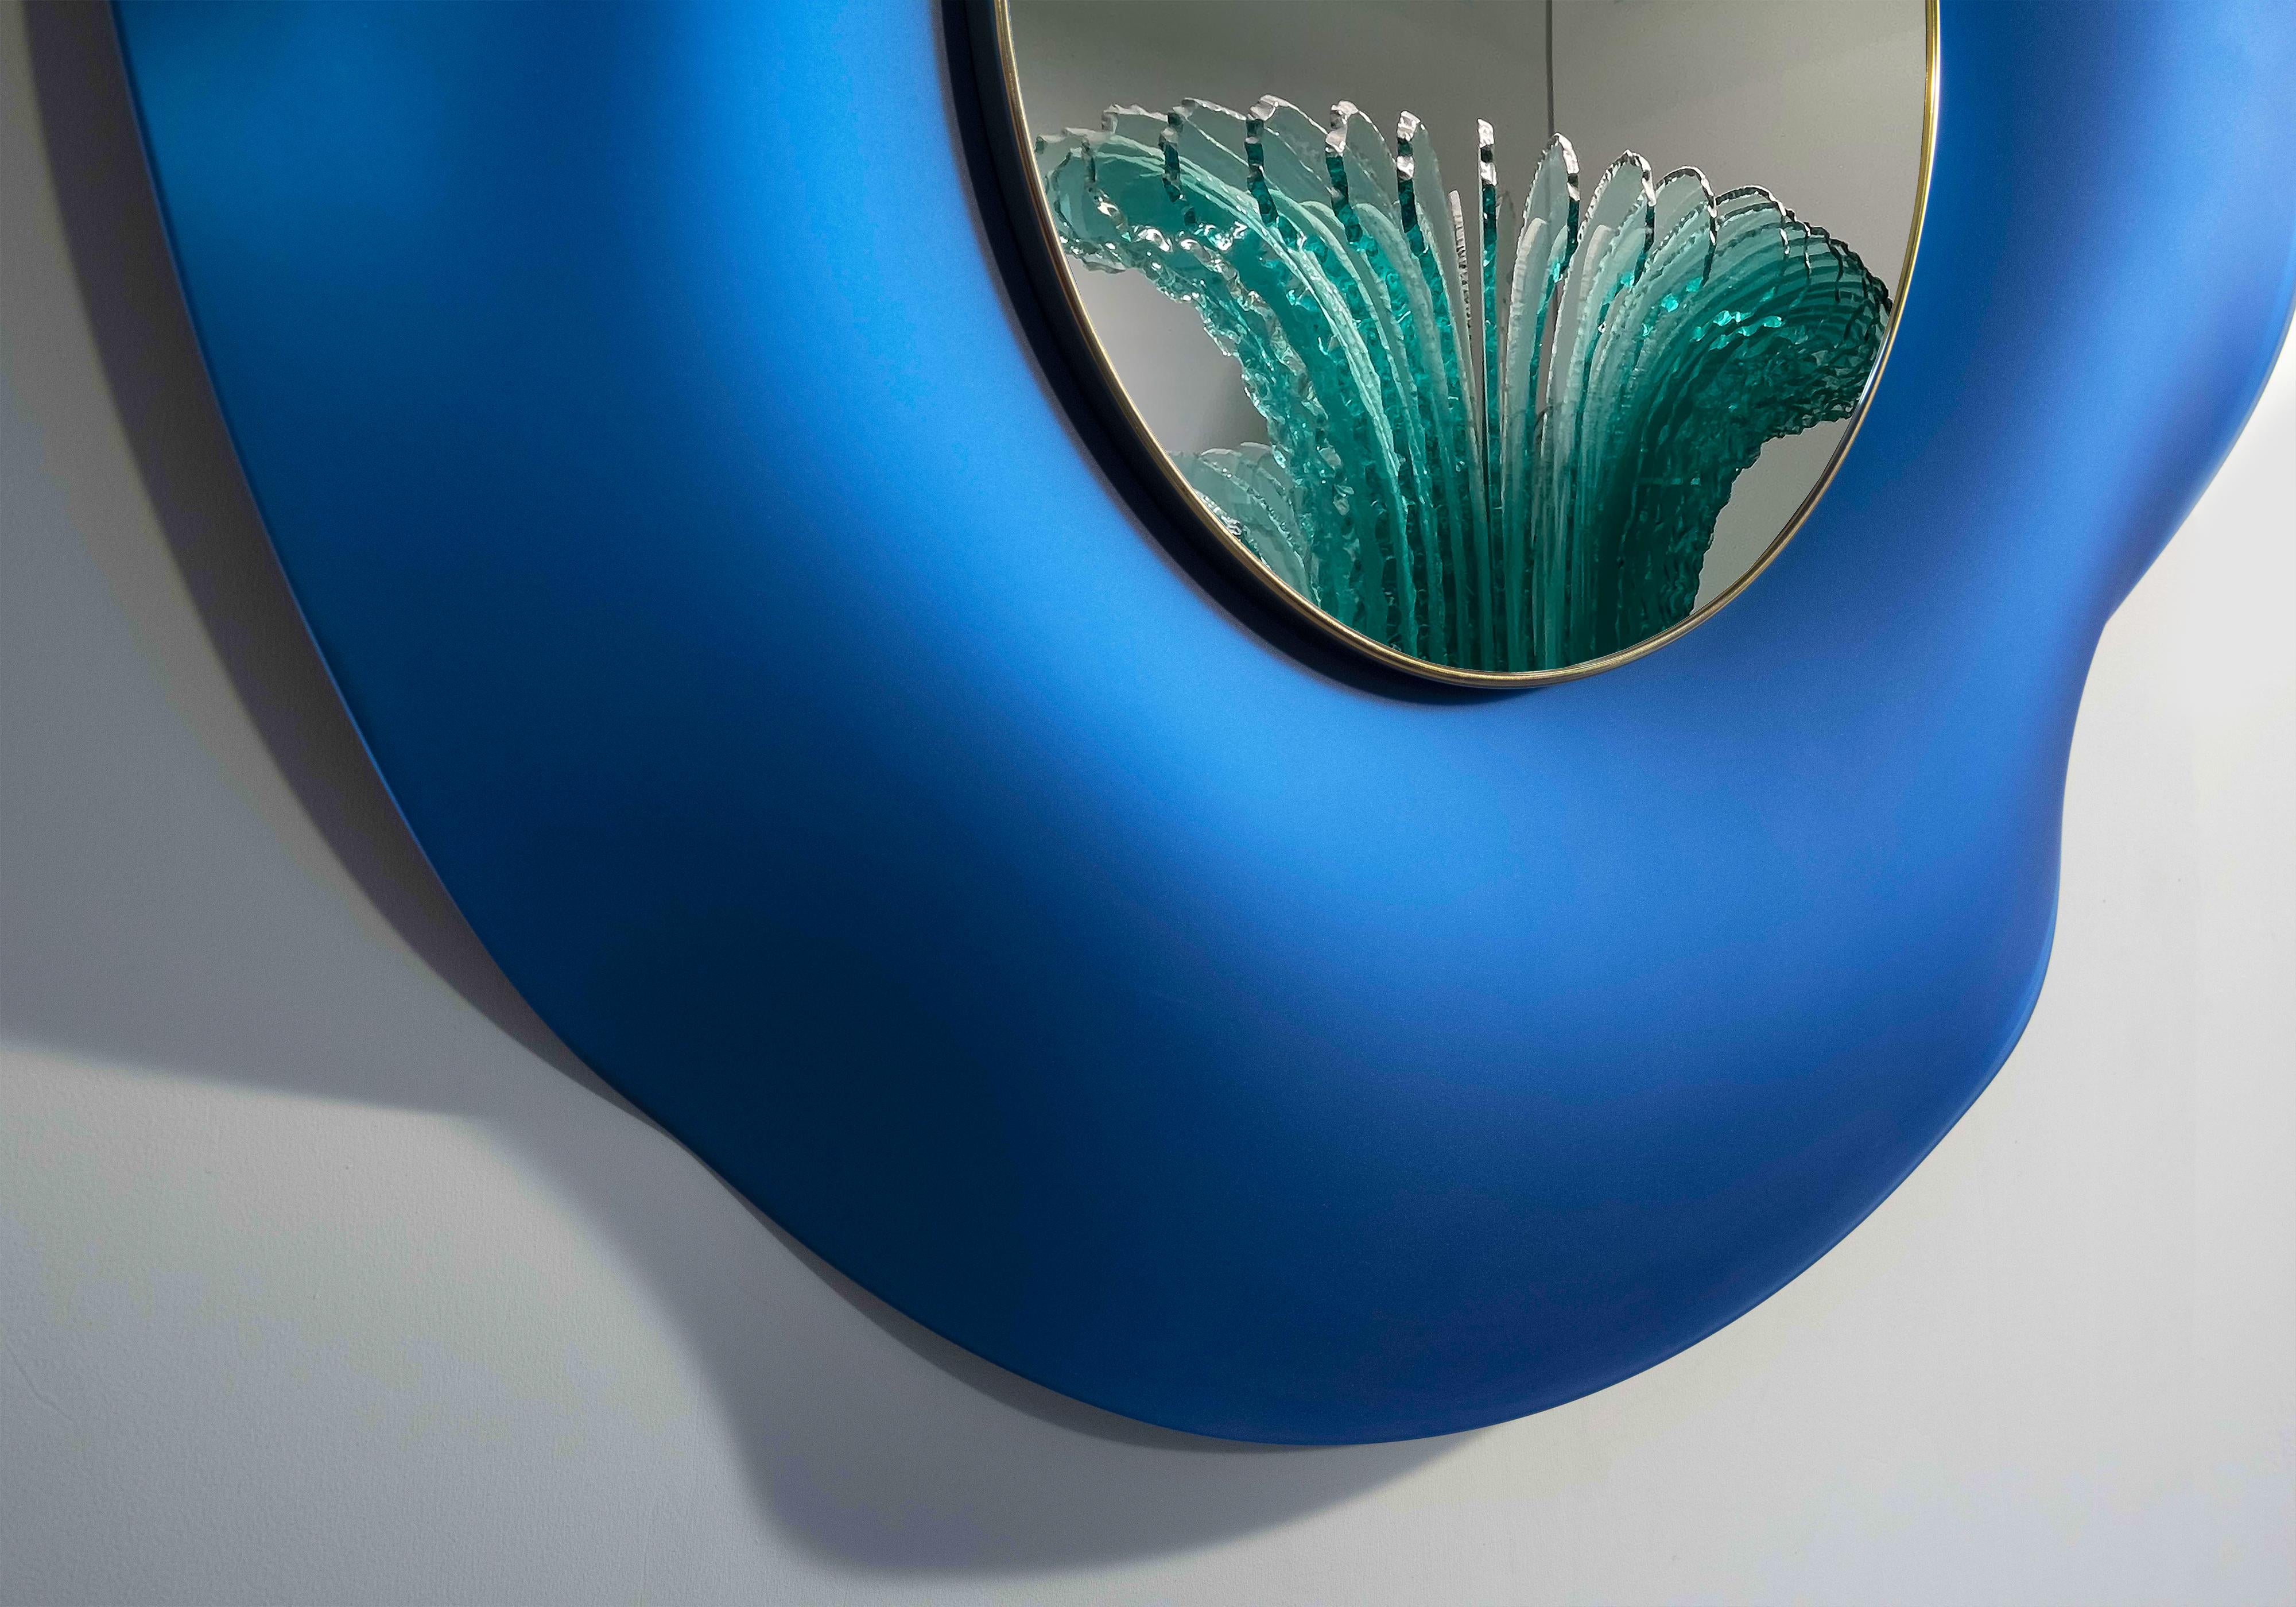 2021 Kollektion von Wandspiegeln von Ghirò Studio (Mailand)
Der gewellte Spiegel 'Undulate' ist ein Kunstobjekt aus purer Kunst und Design. 
Der Kristall wurde vom Künstler handgearbeitet und fachmännisch geschwungen. 
Die Trägerstruktur besteht